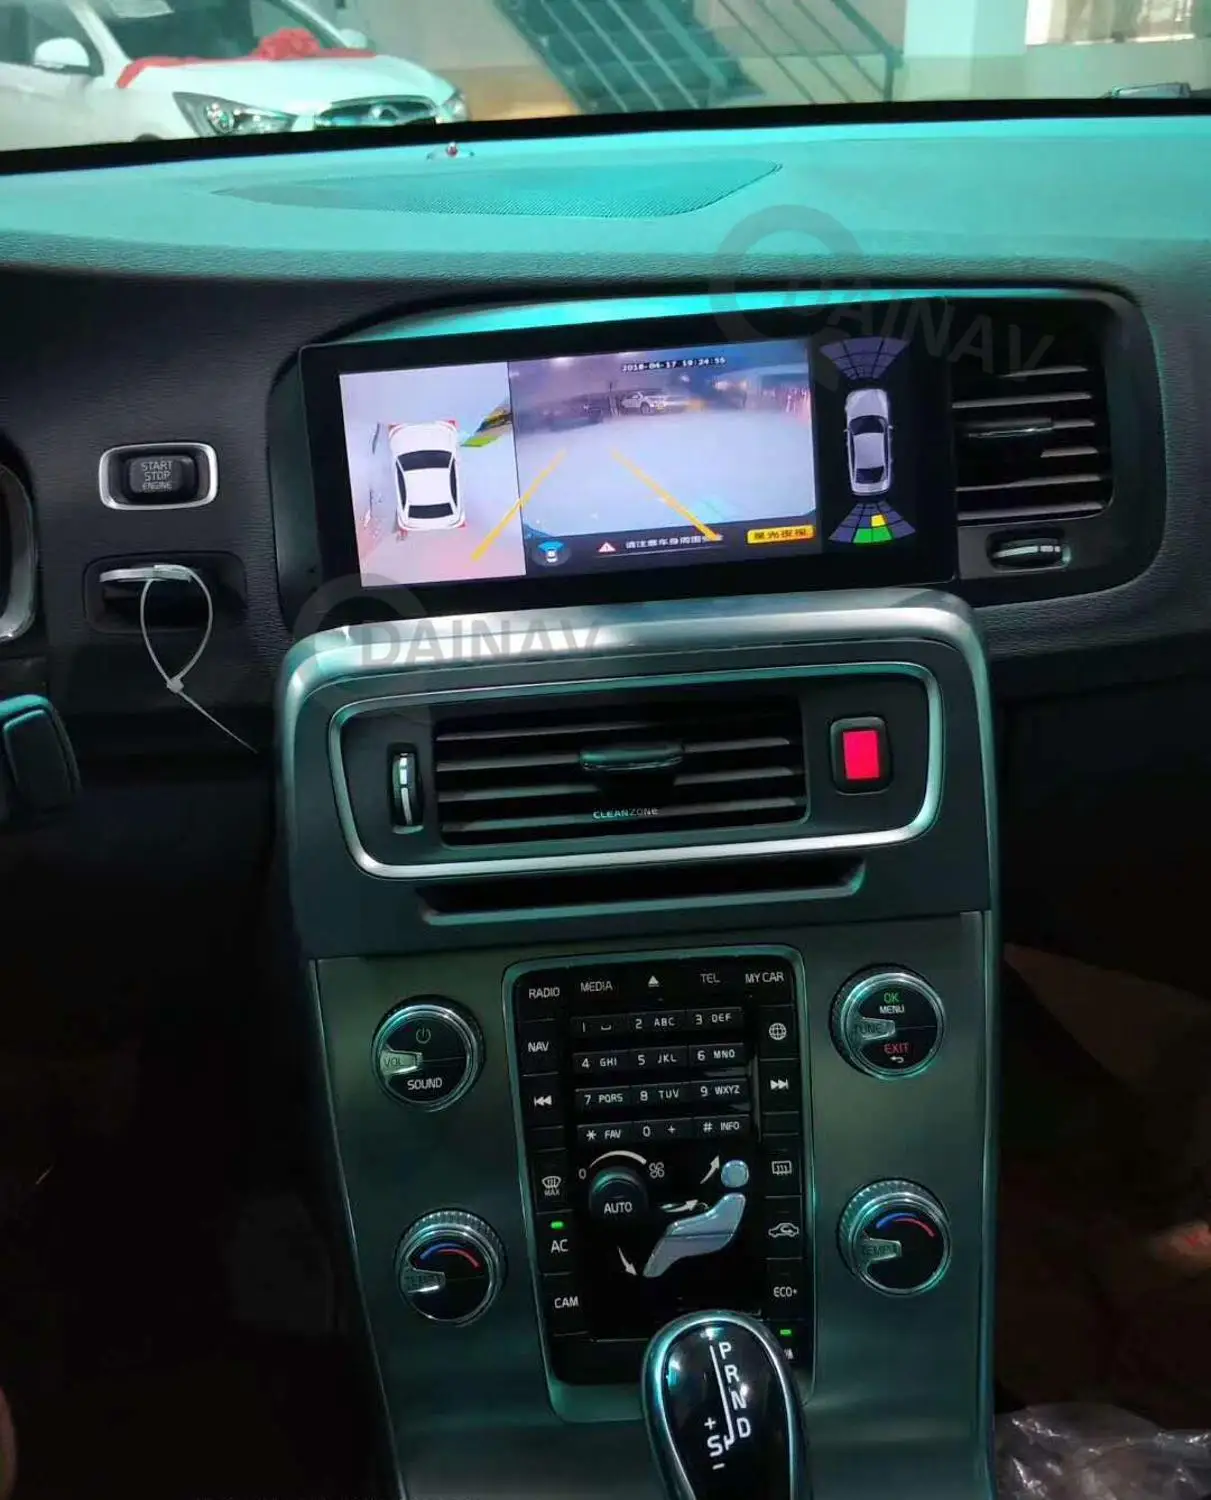 Android Auto Autoradio Spēlētājs Volvo V60 S60 2011. - 2020. Gadam Automašīnas Multimediju DVD Atskaņotājs, GPS Navigācija